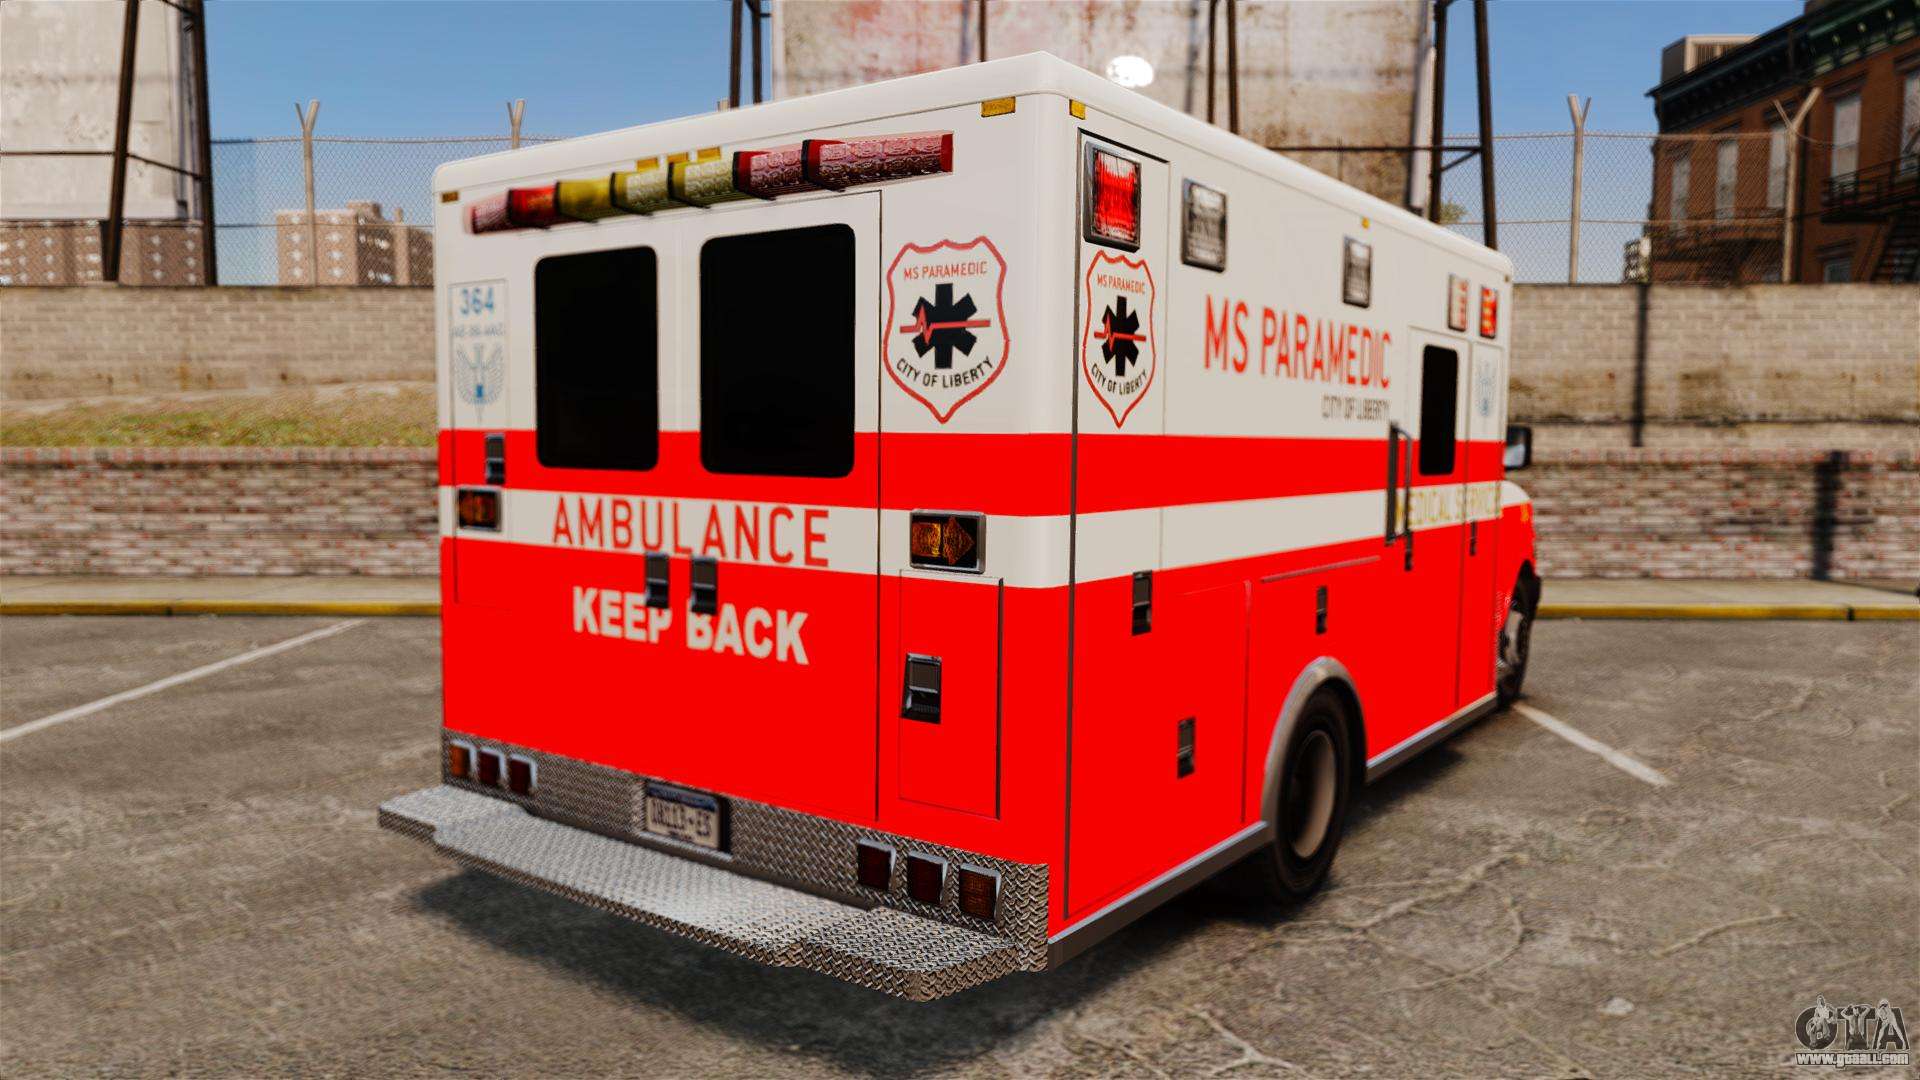 Brute Ambulance FDLC [ELS] for GTA 4